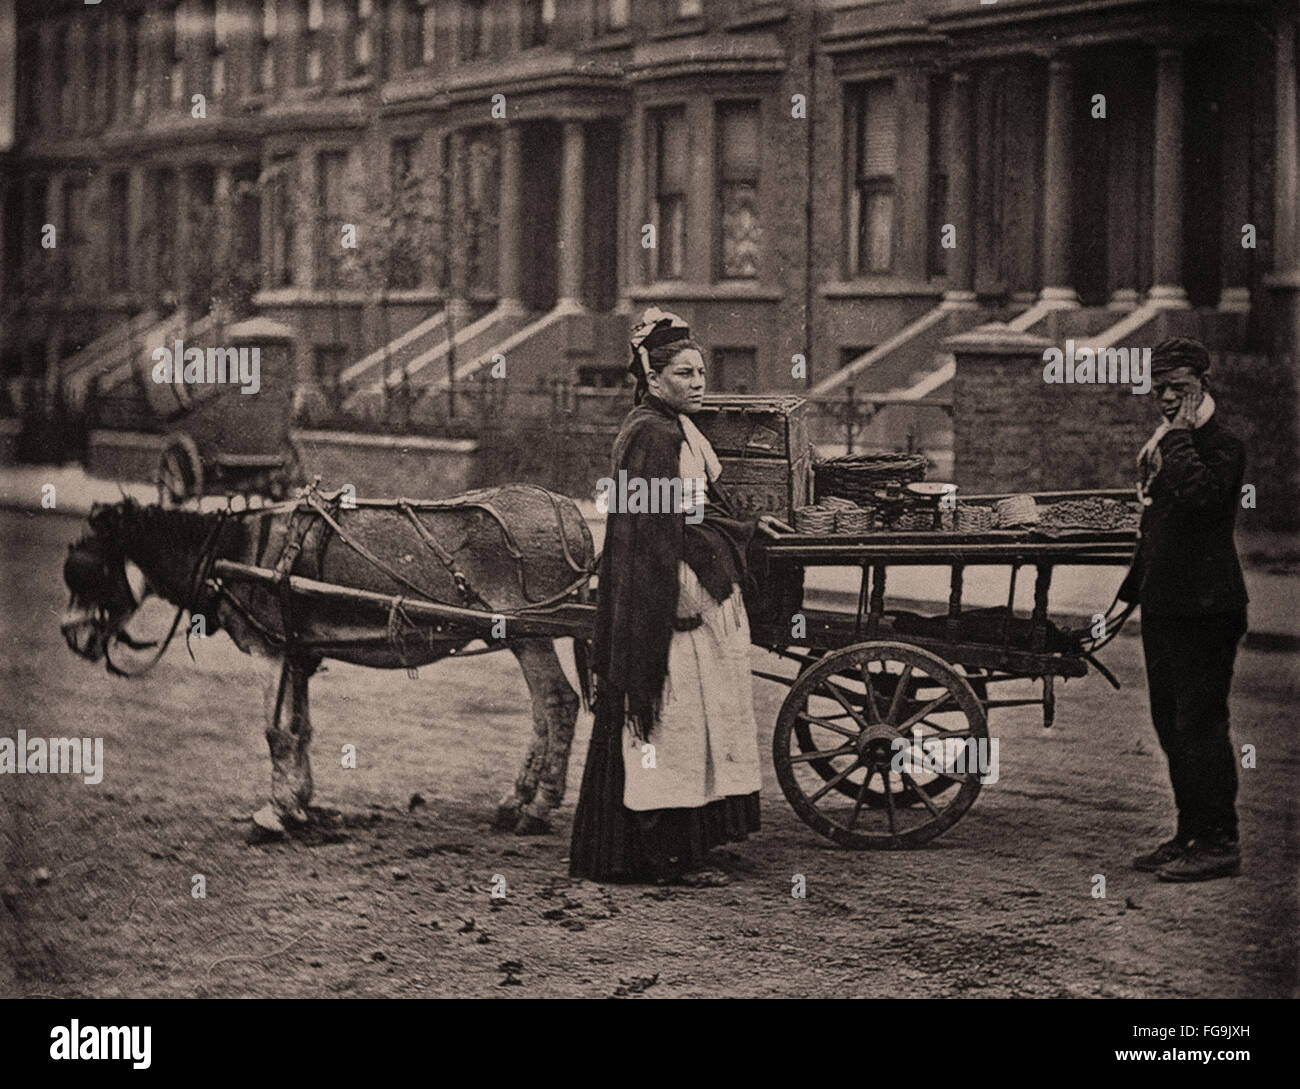 Leben auf der Straße in London aus dem viktorianischen Zeitalter - Händlers Warenkorb Stockfoto